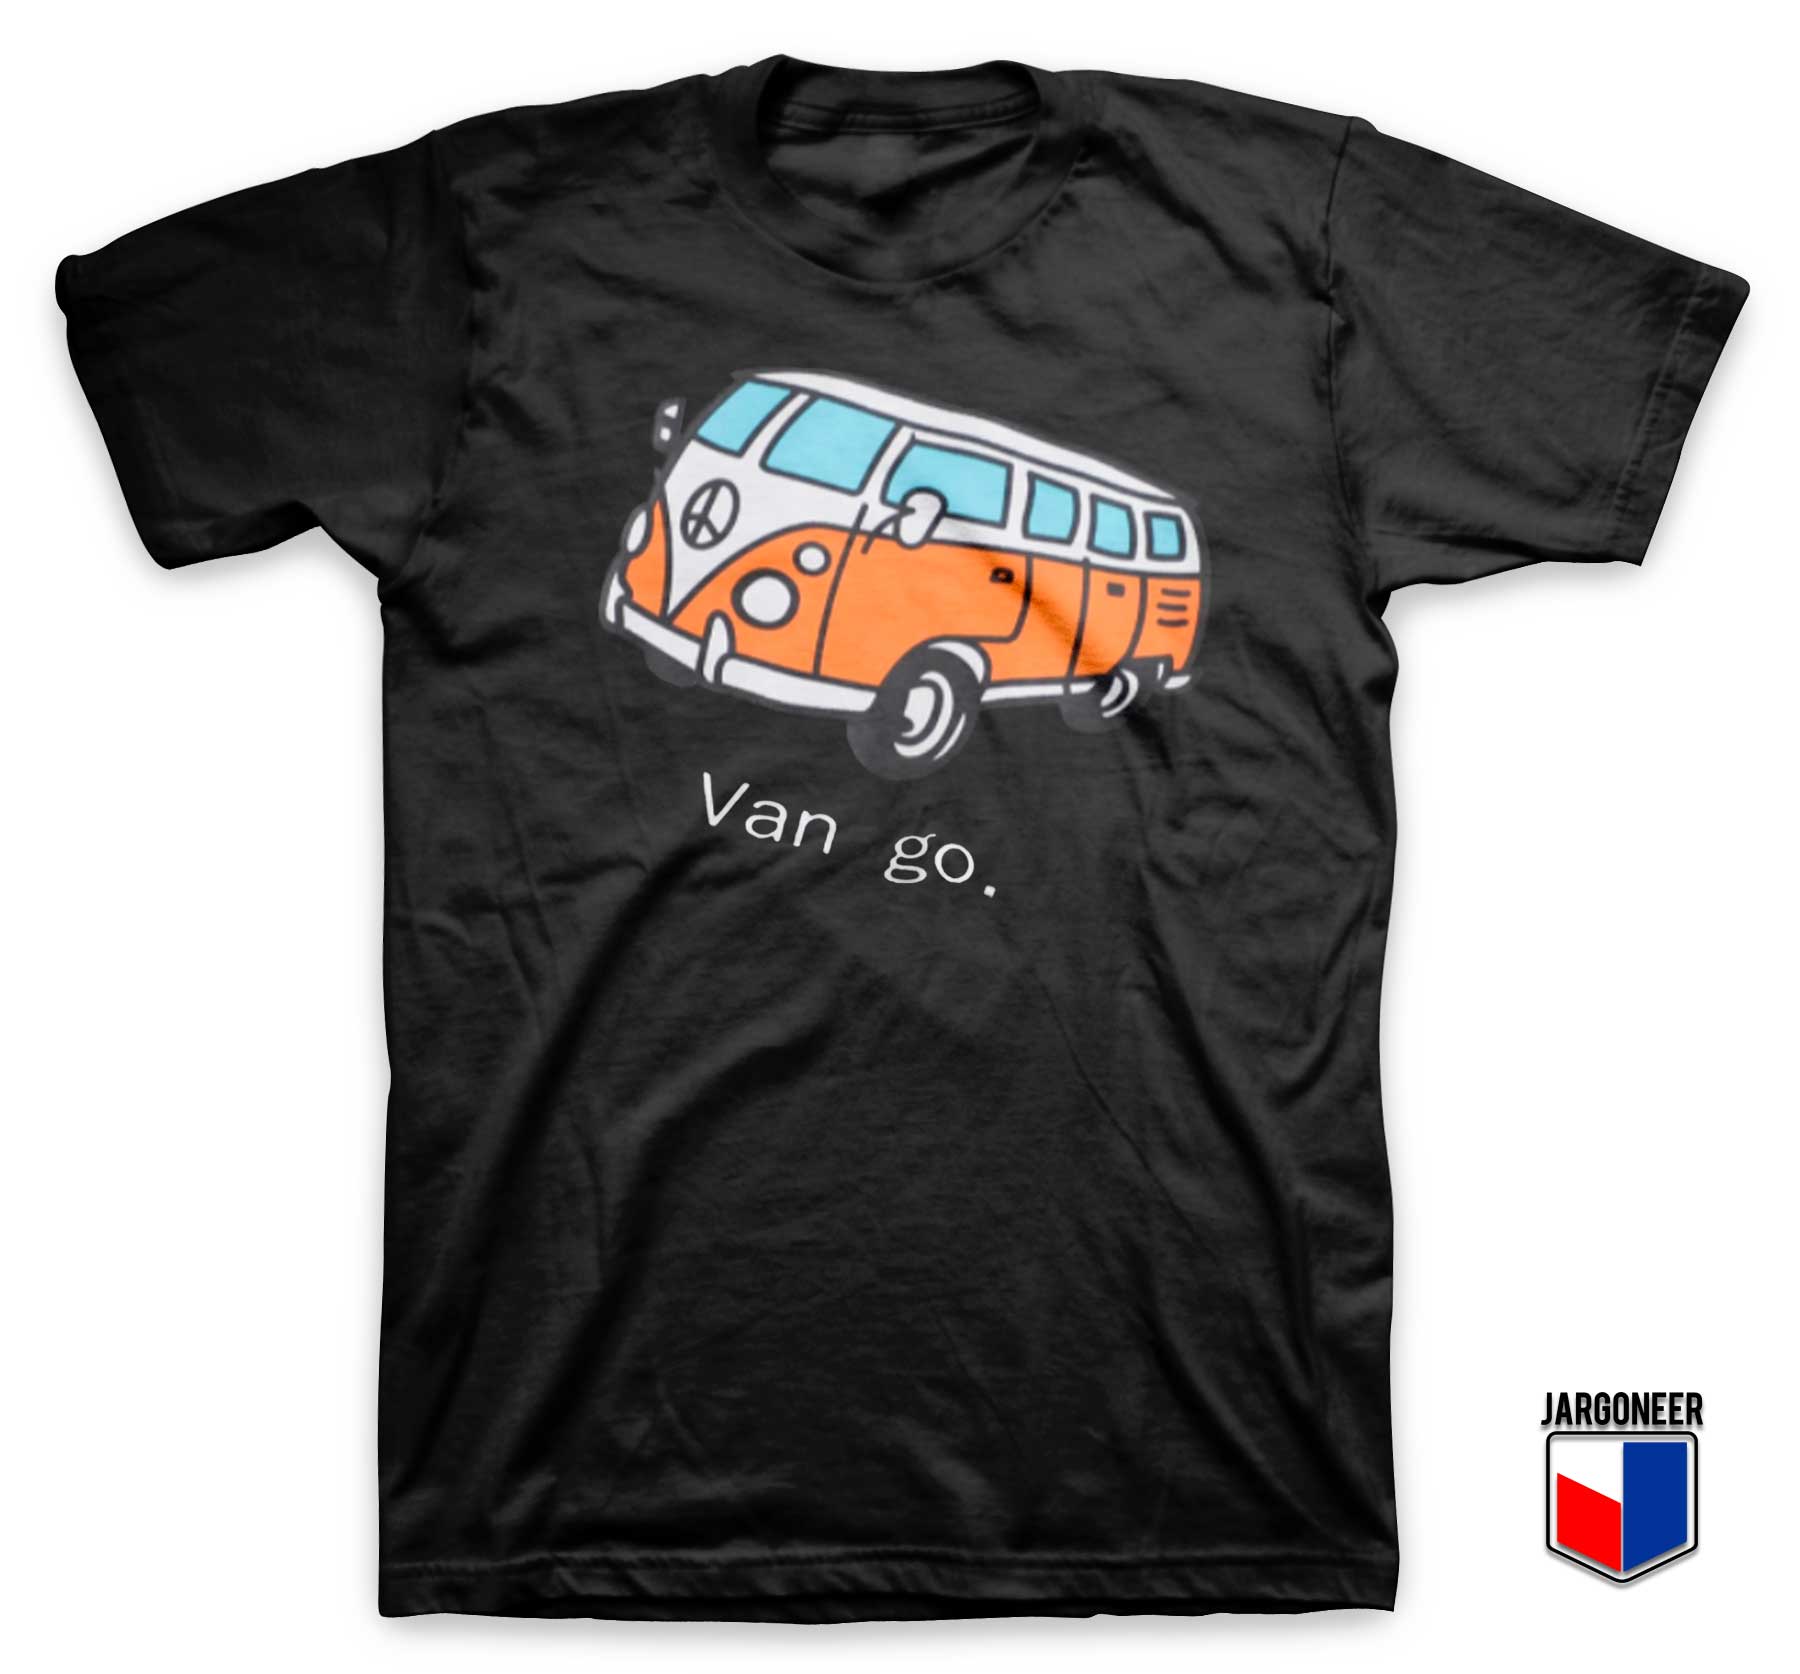 Car And Letter Van go T Shirt - Shop Unique Graphic Cool Shirt Designs